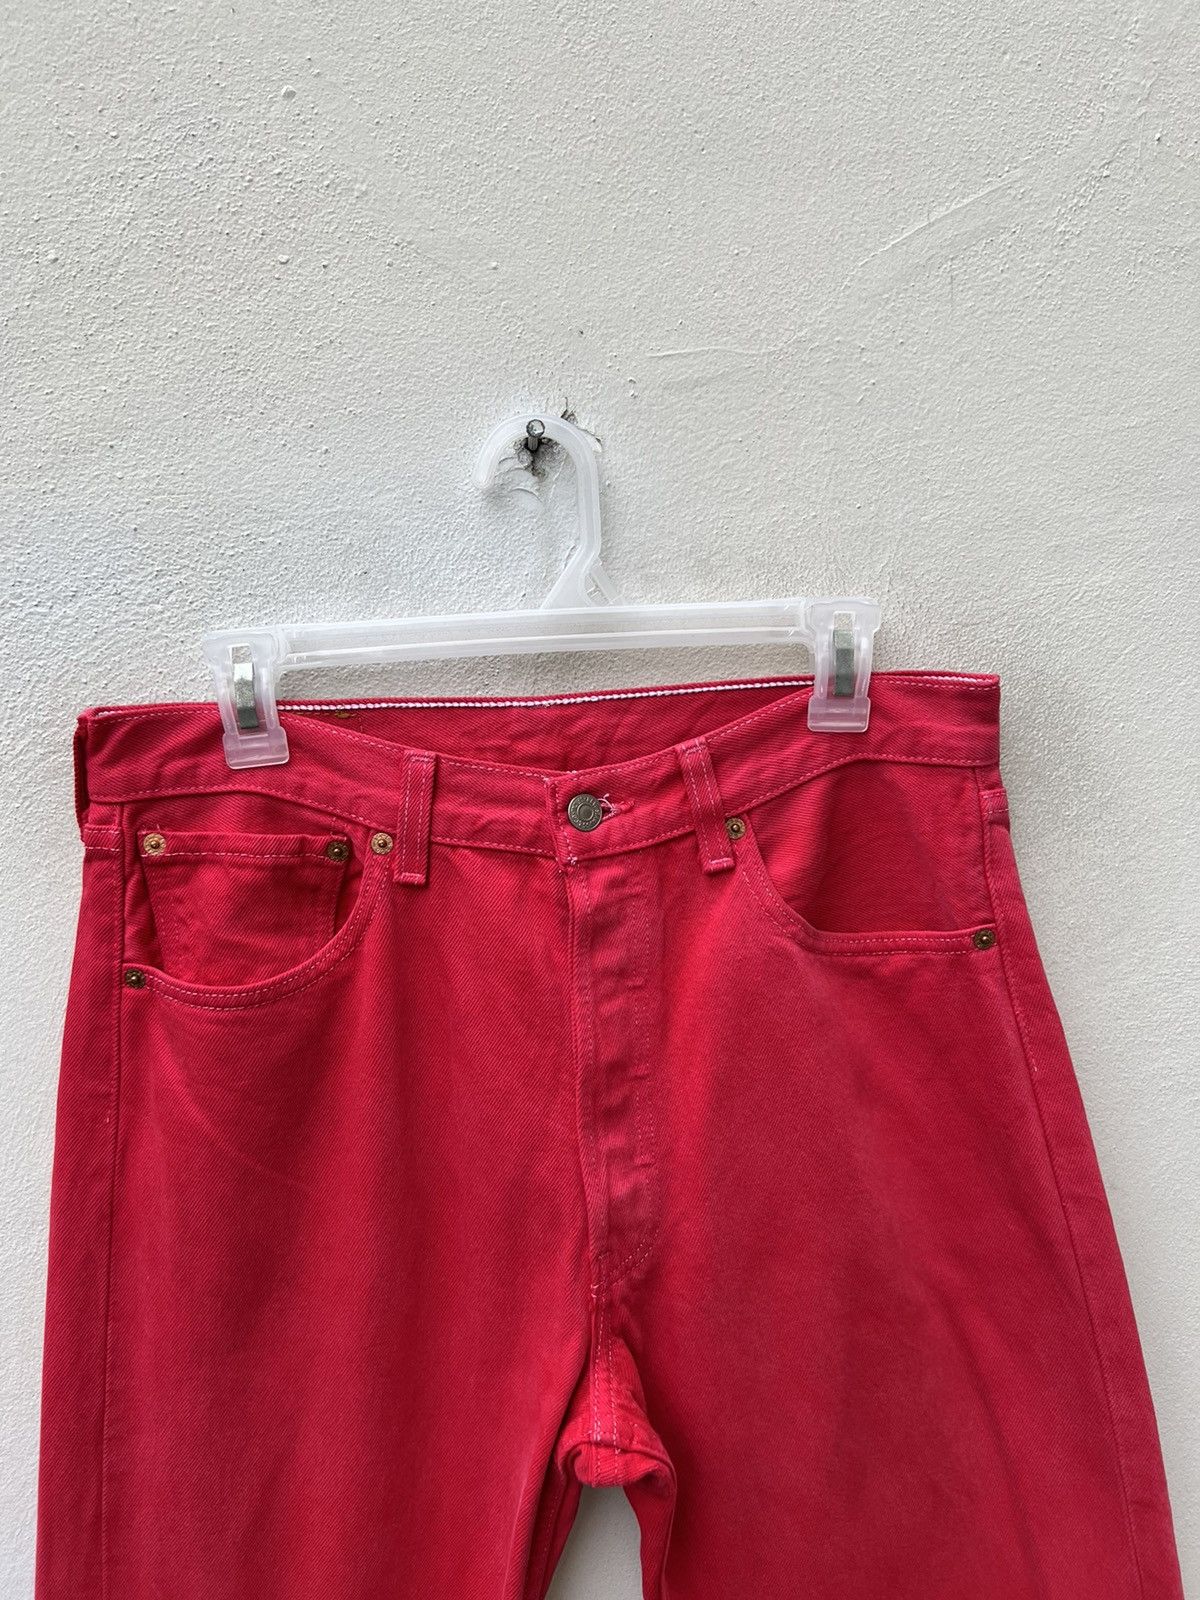 Vintage Vintage 1999 Levi’s 501 Fade Red Denim Jeans Size US 31 - 7 Thumbnail